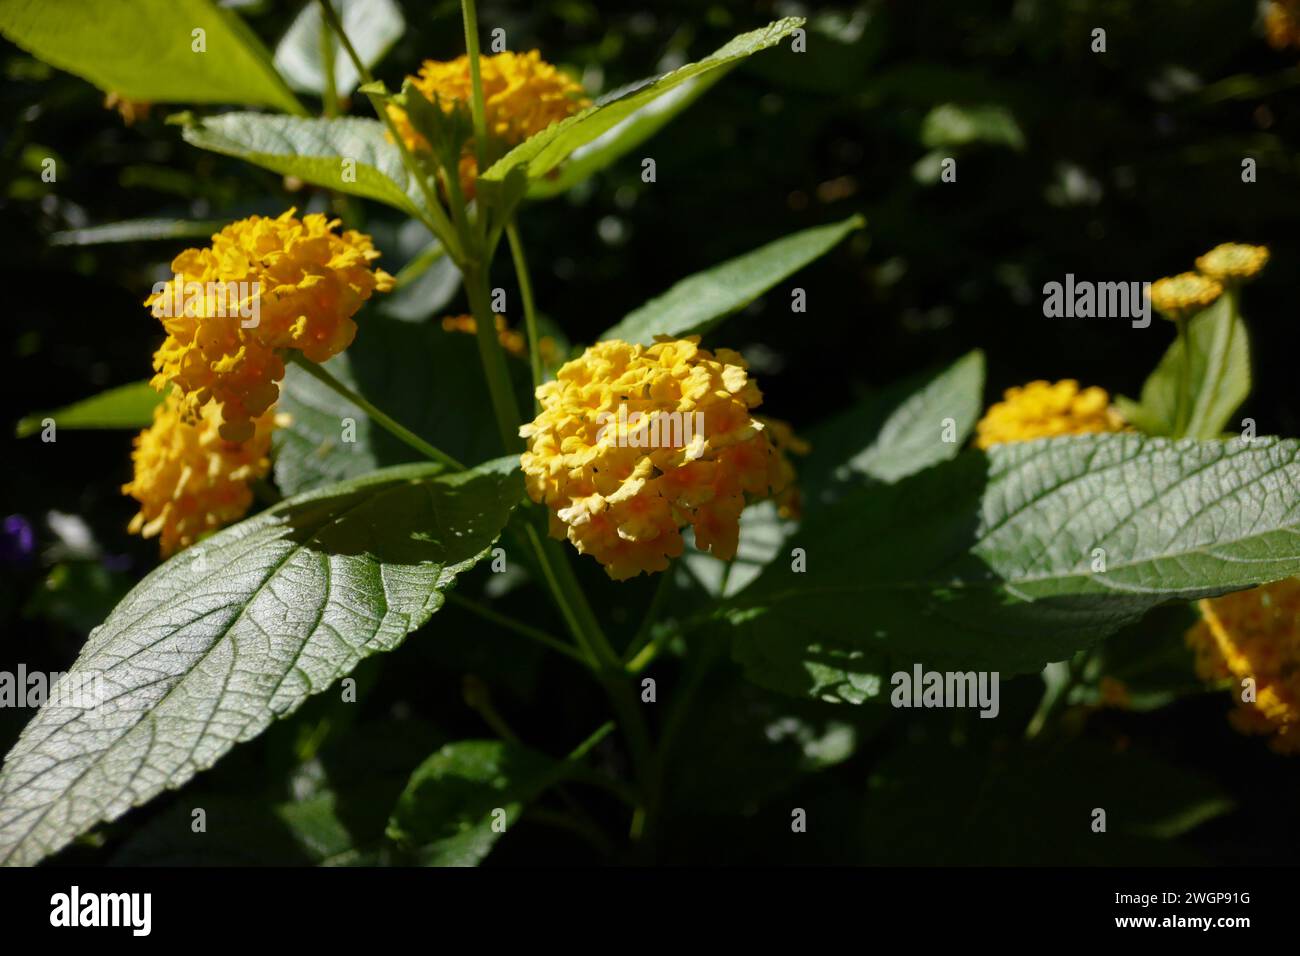 Lantana camara (geläufige lantana) ist eine blühende Pflanze aus der Familie der Verbenaceae (Verbenaceae), die in den amerikanischen Tropen beheimatet ist. Stockfoto